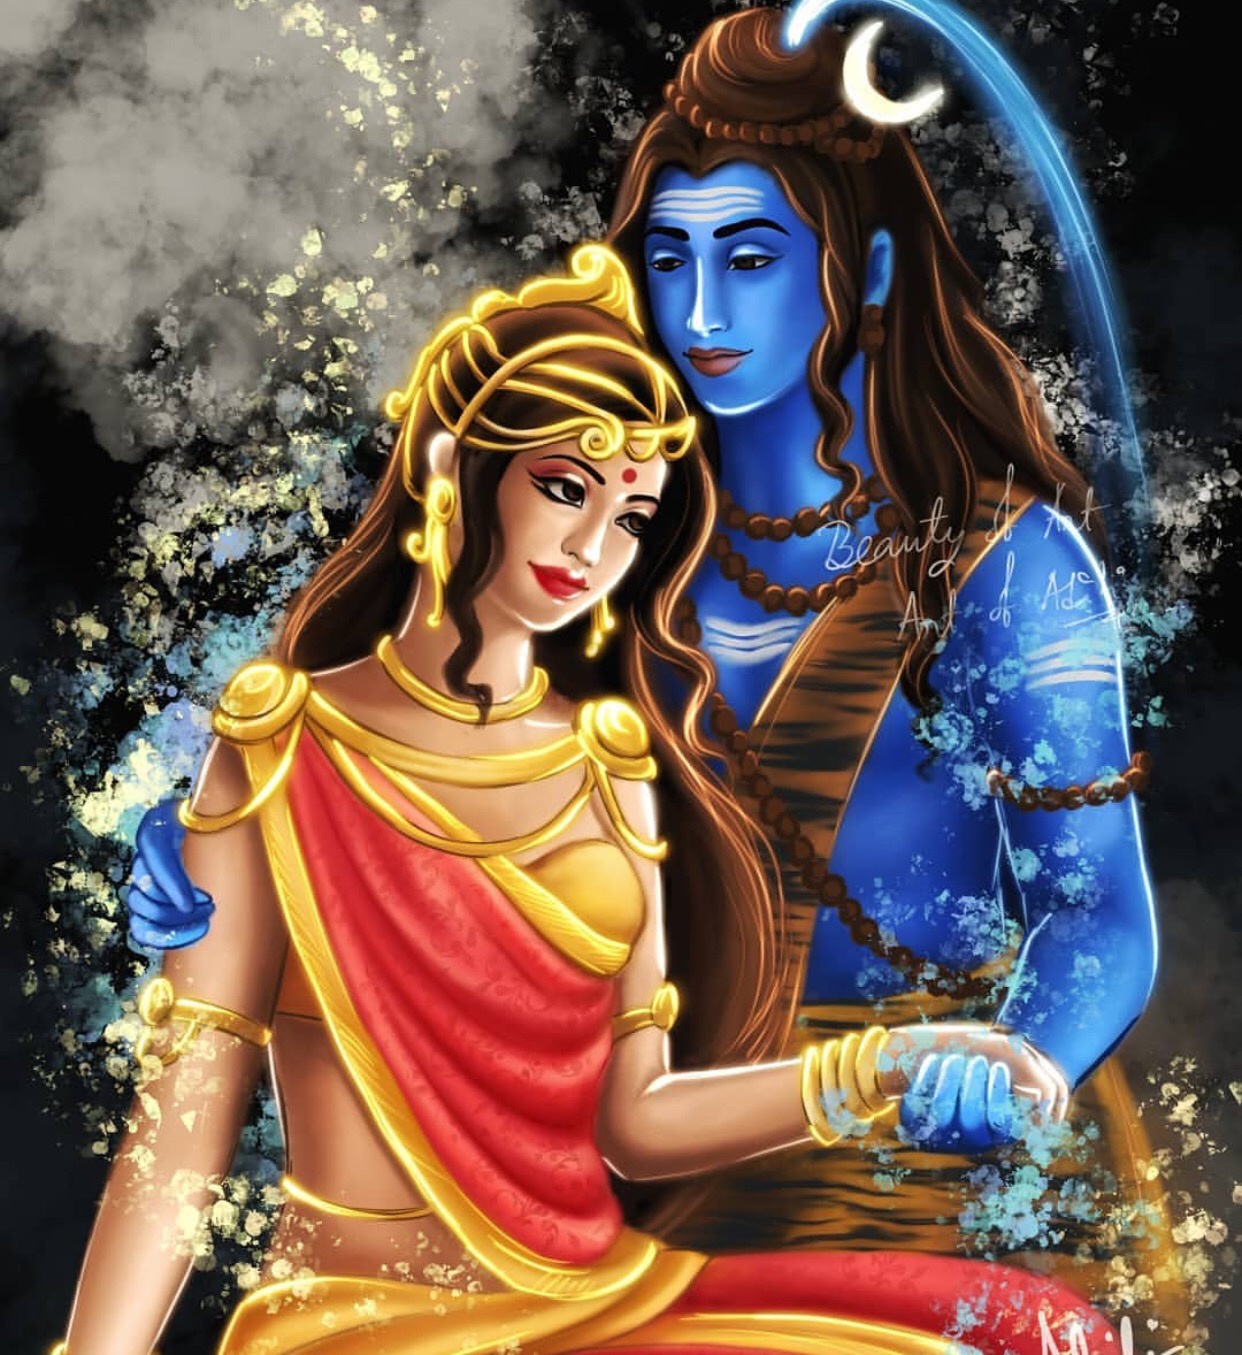 Shrashti Creator Romantic Romance Shiv Parvati Images | Shiv Parvati Love  Images - Good Morning